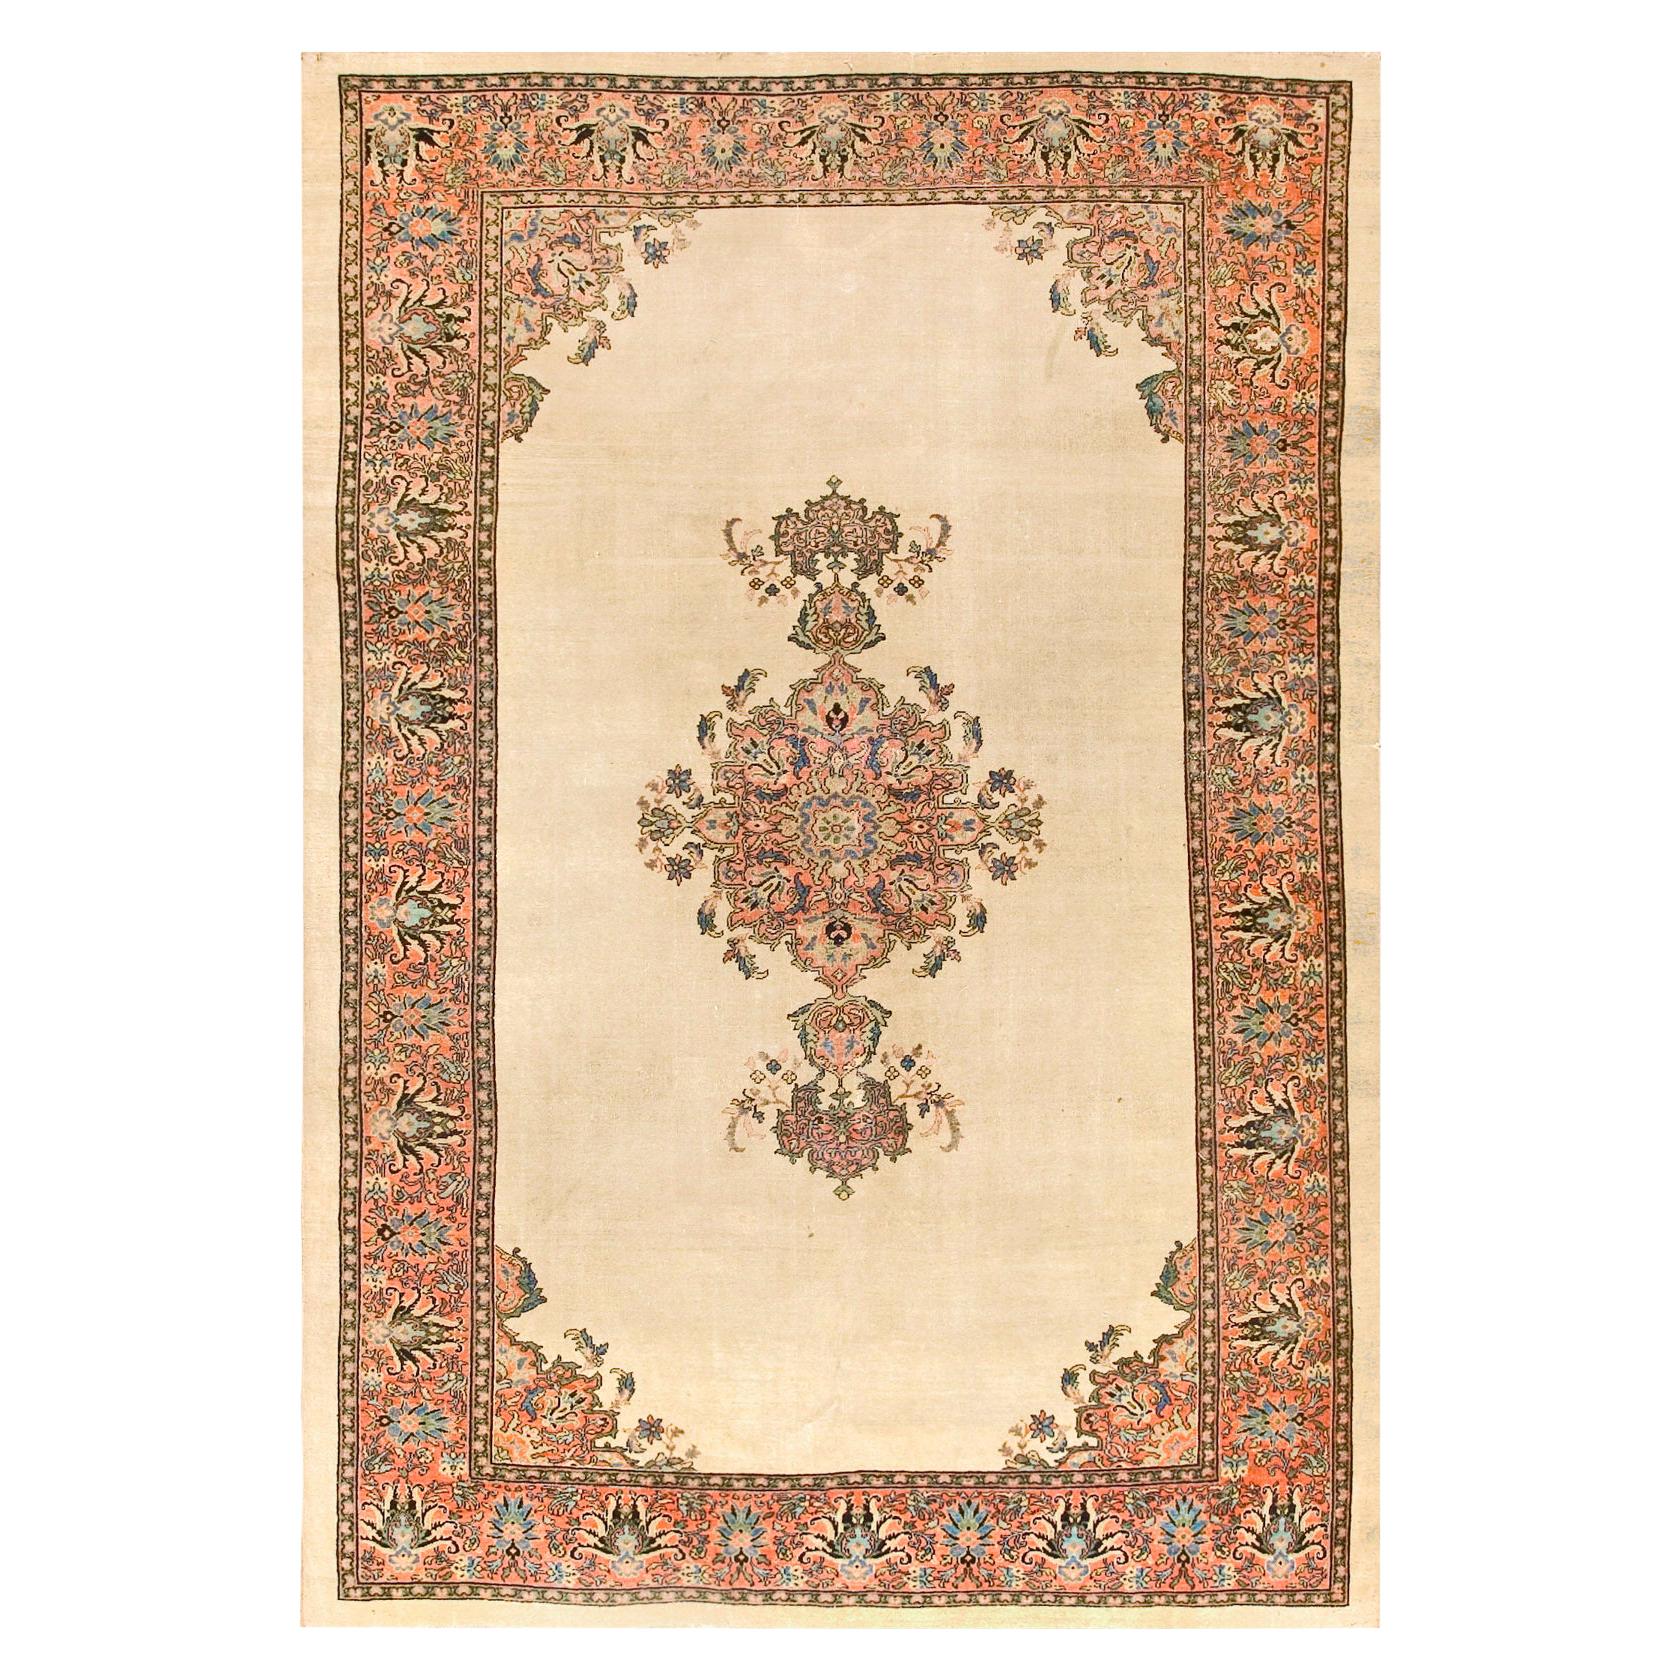 19th Century Persian Farahan Carpet ( 6'9" x 10' - 205 x 305 )